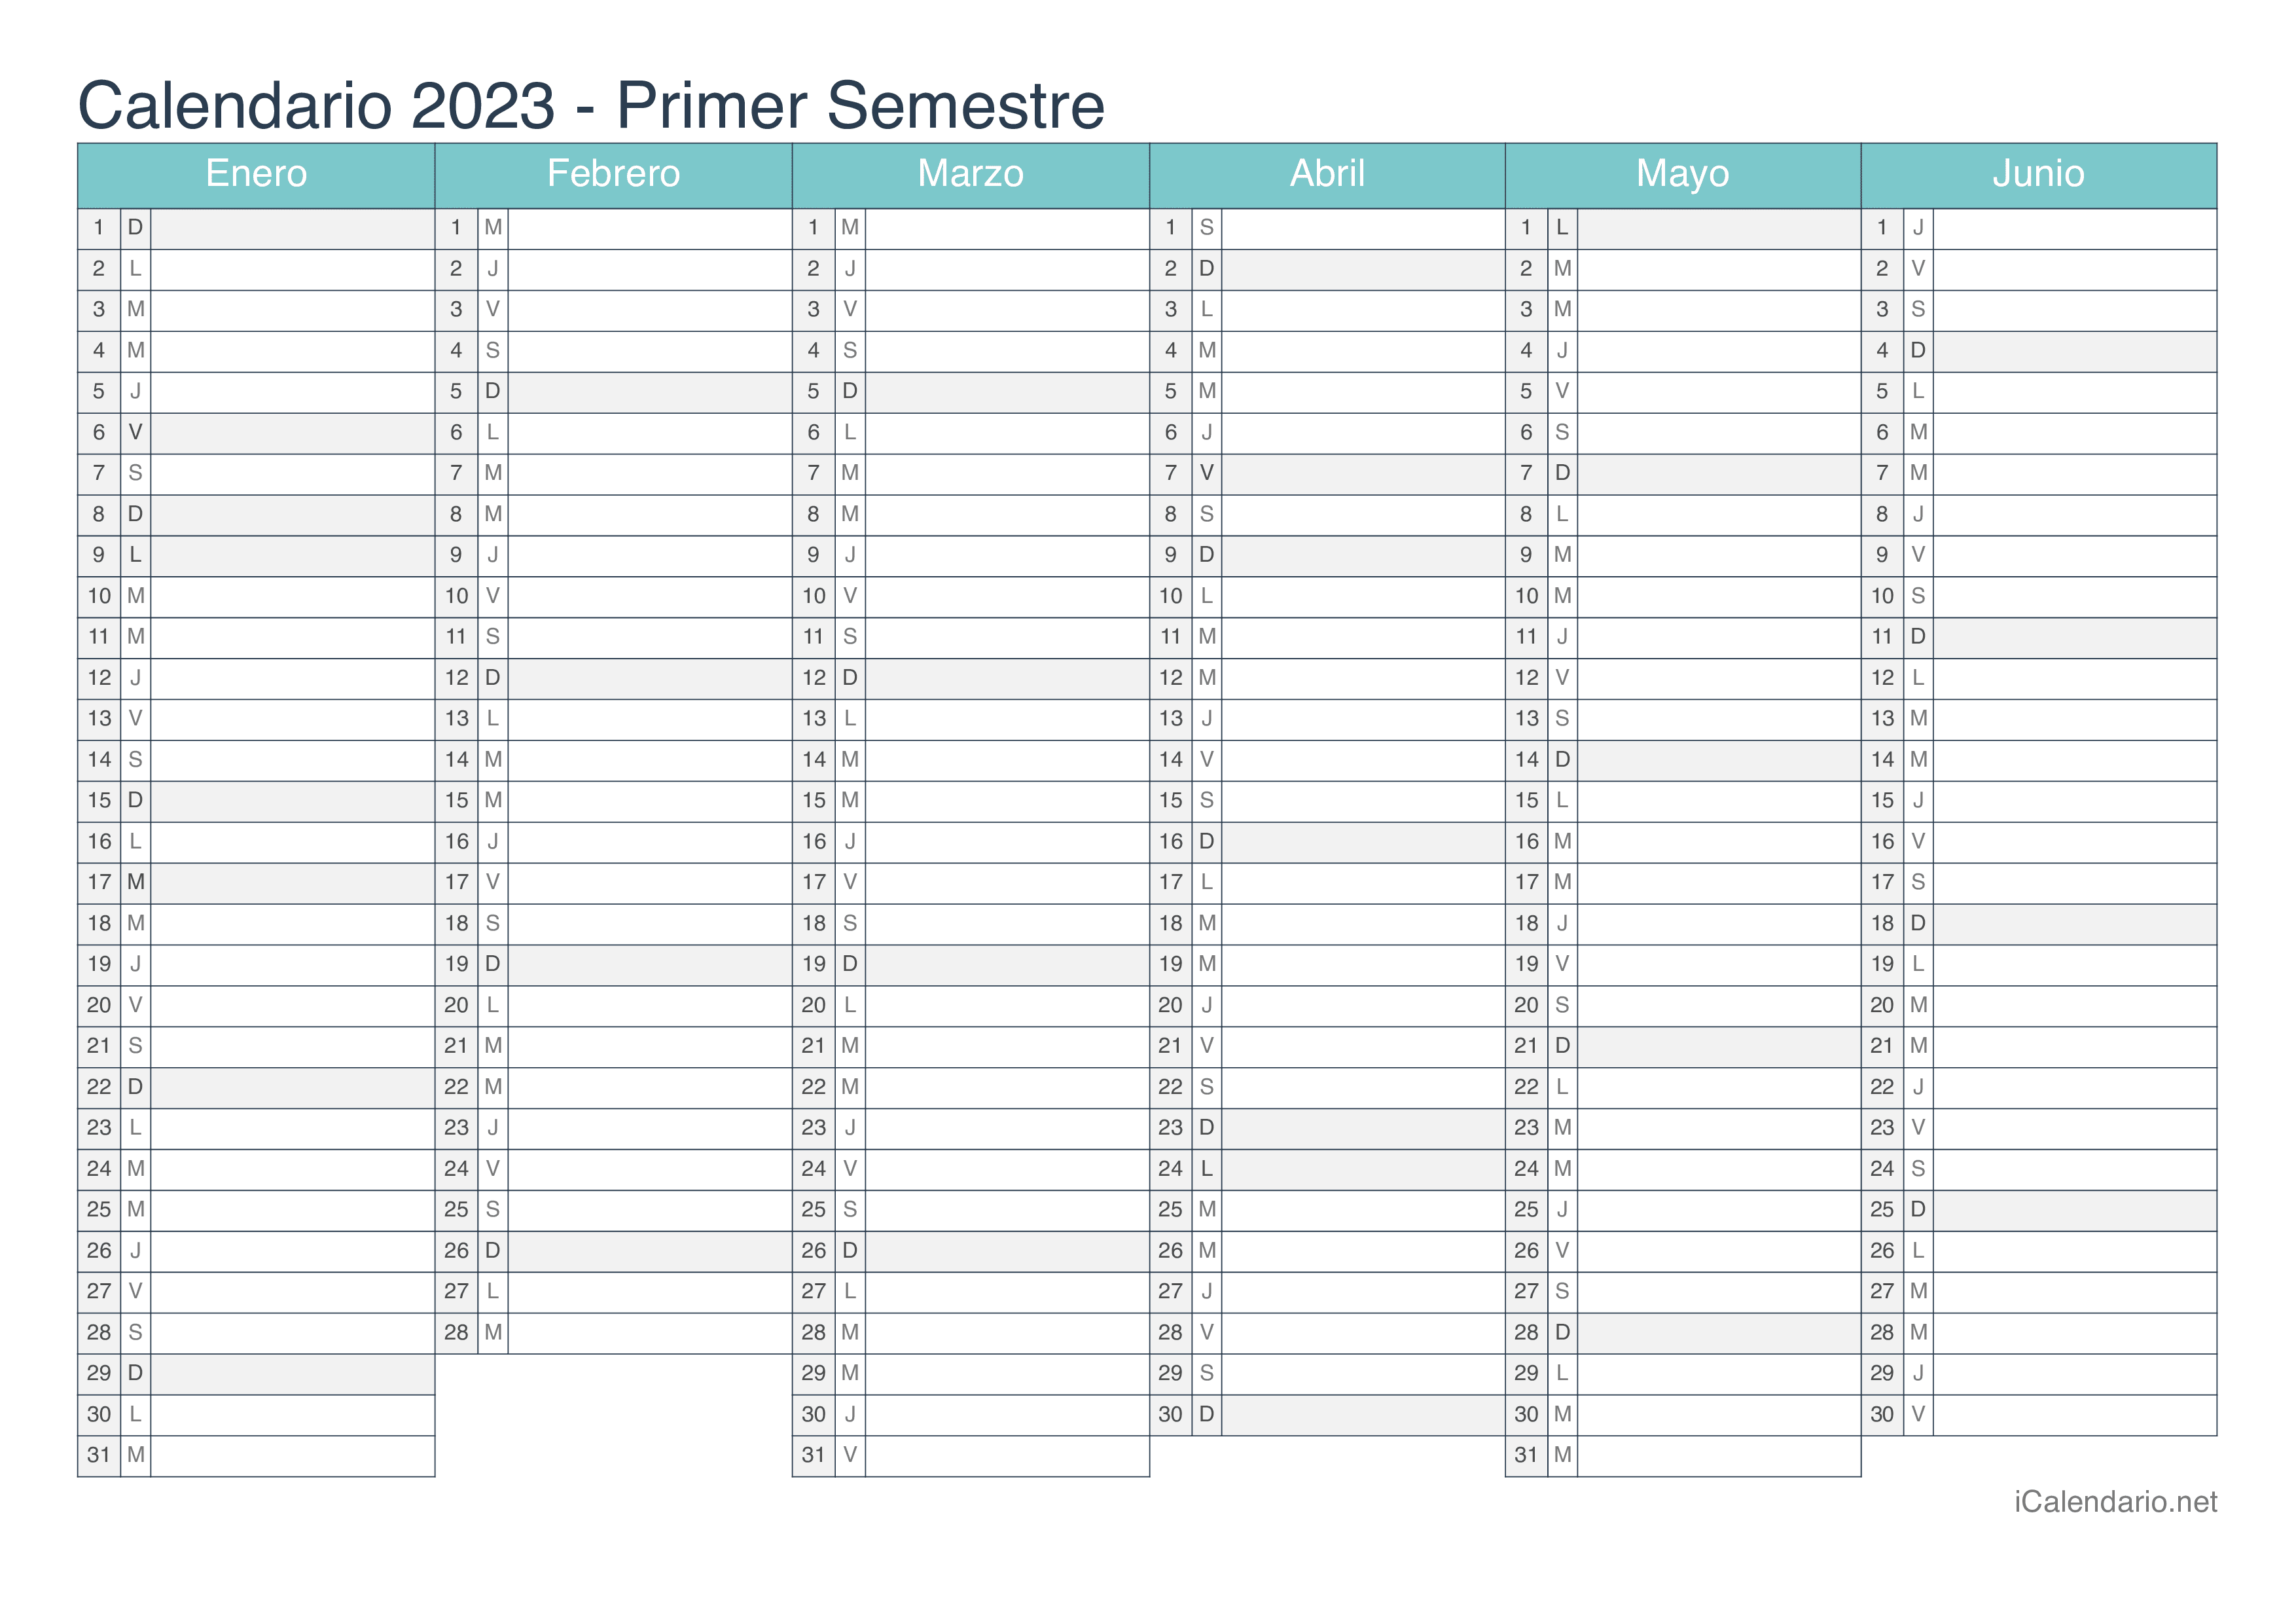 Calendario por semestre 2023 - Turquesa